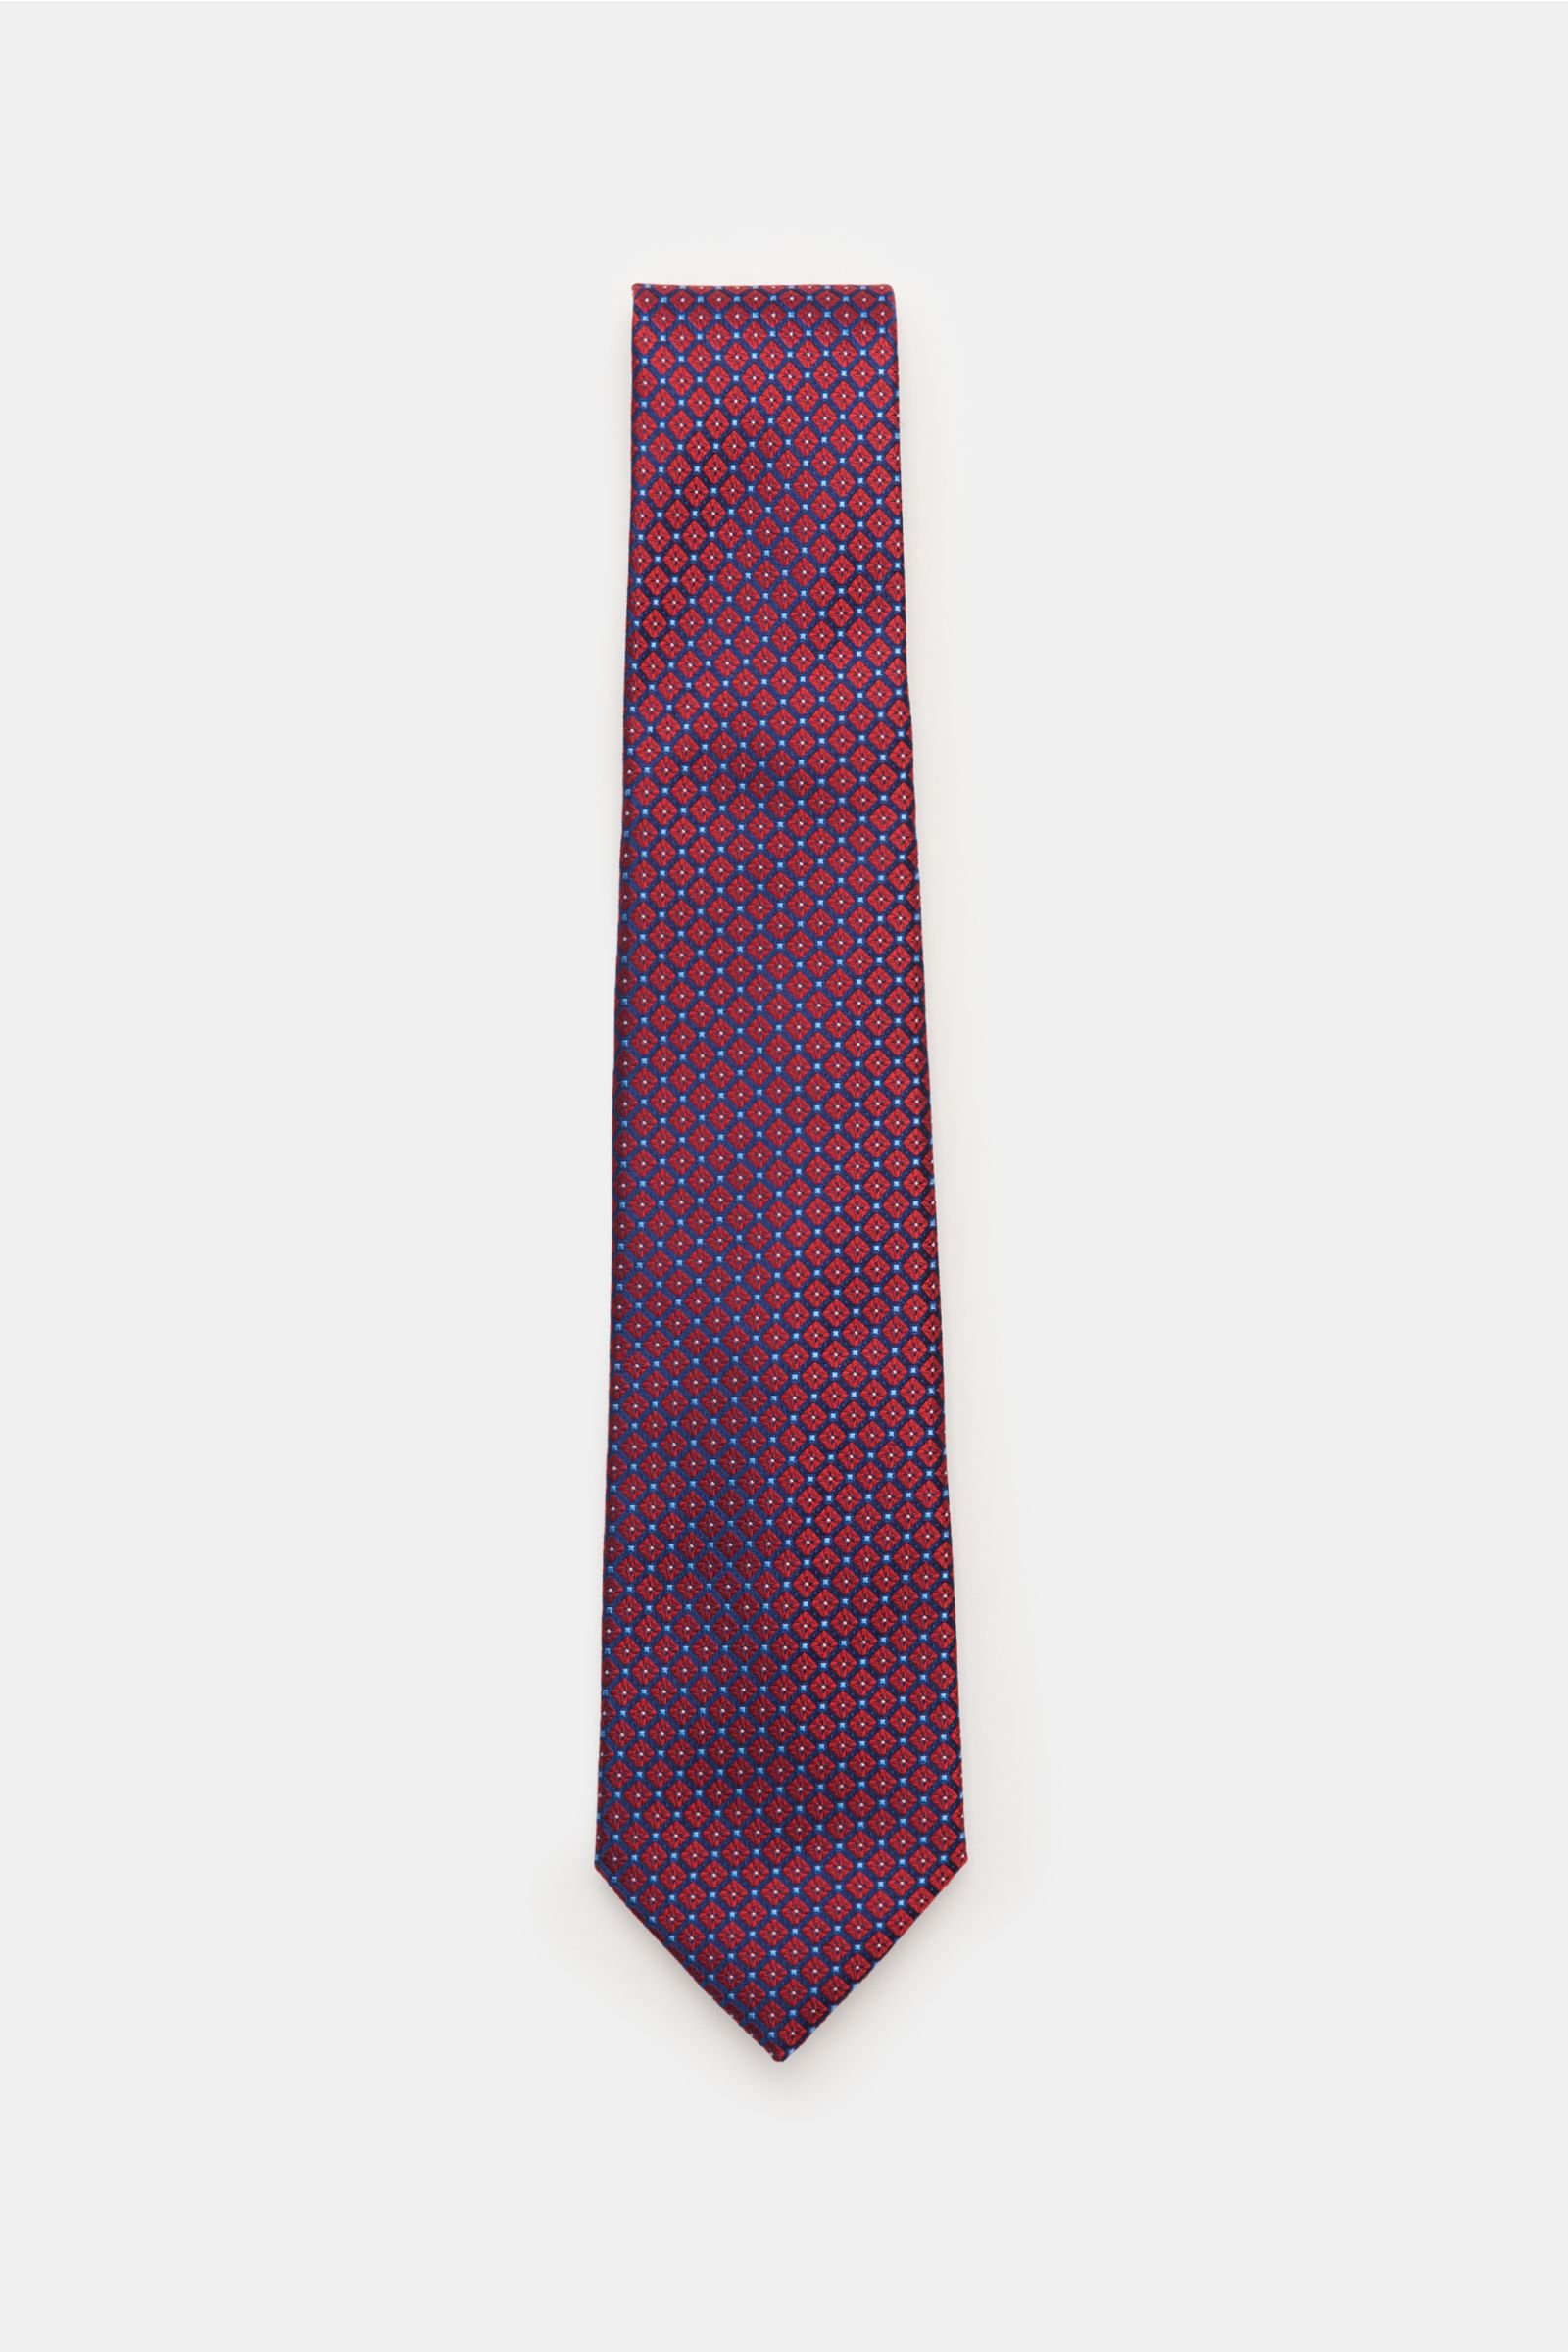 Silk tie navy/dark red patterned